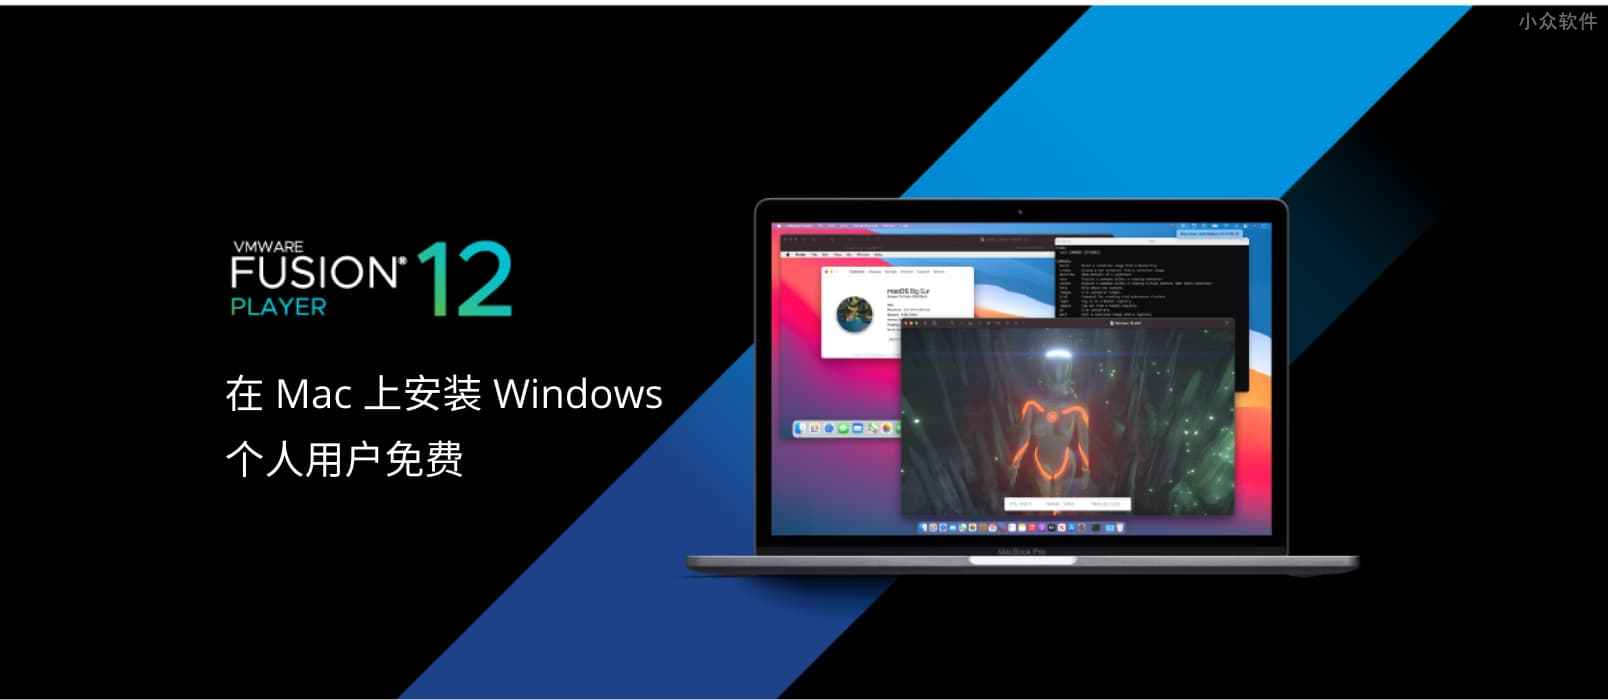 在 Mac 安装 Windows 的虚拟机工具 VMware Fusion 12 正式发布，个人免费 1